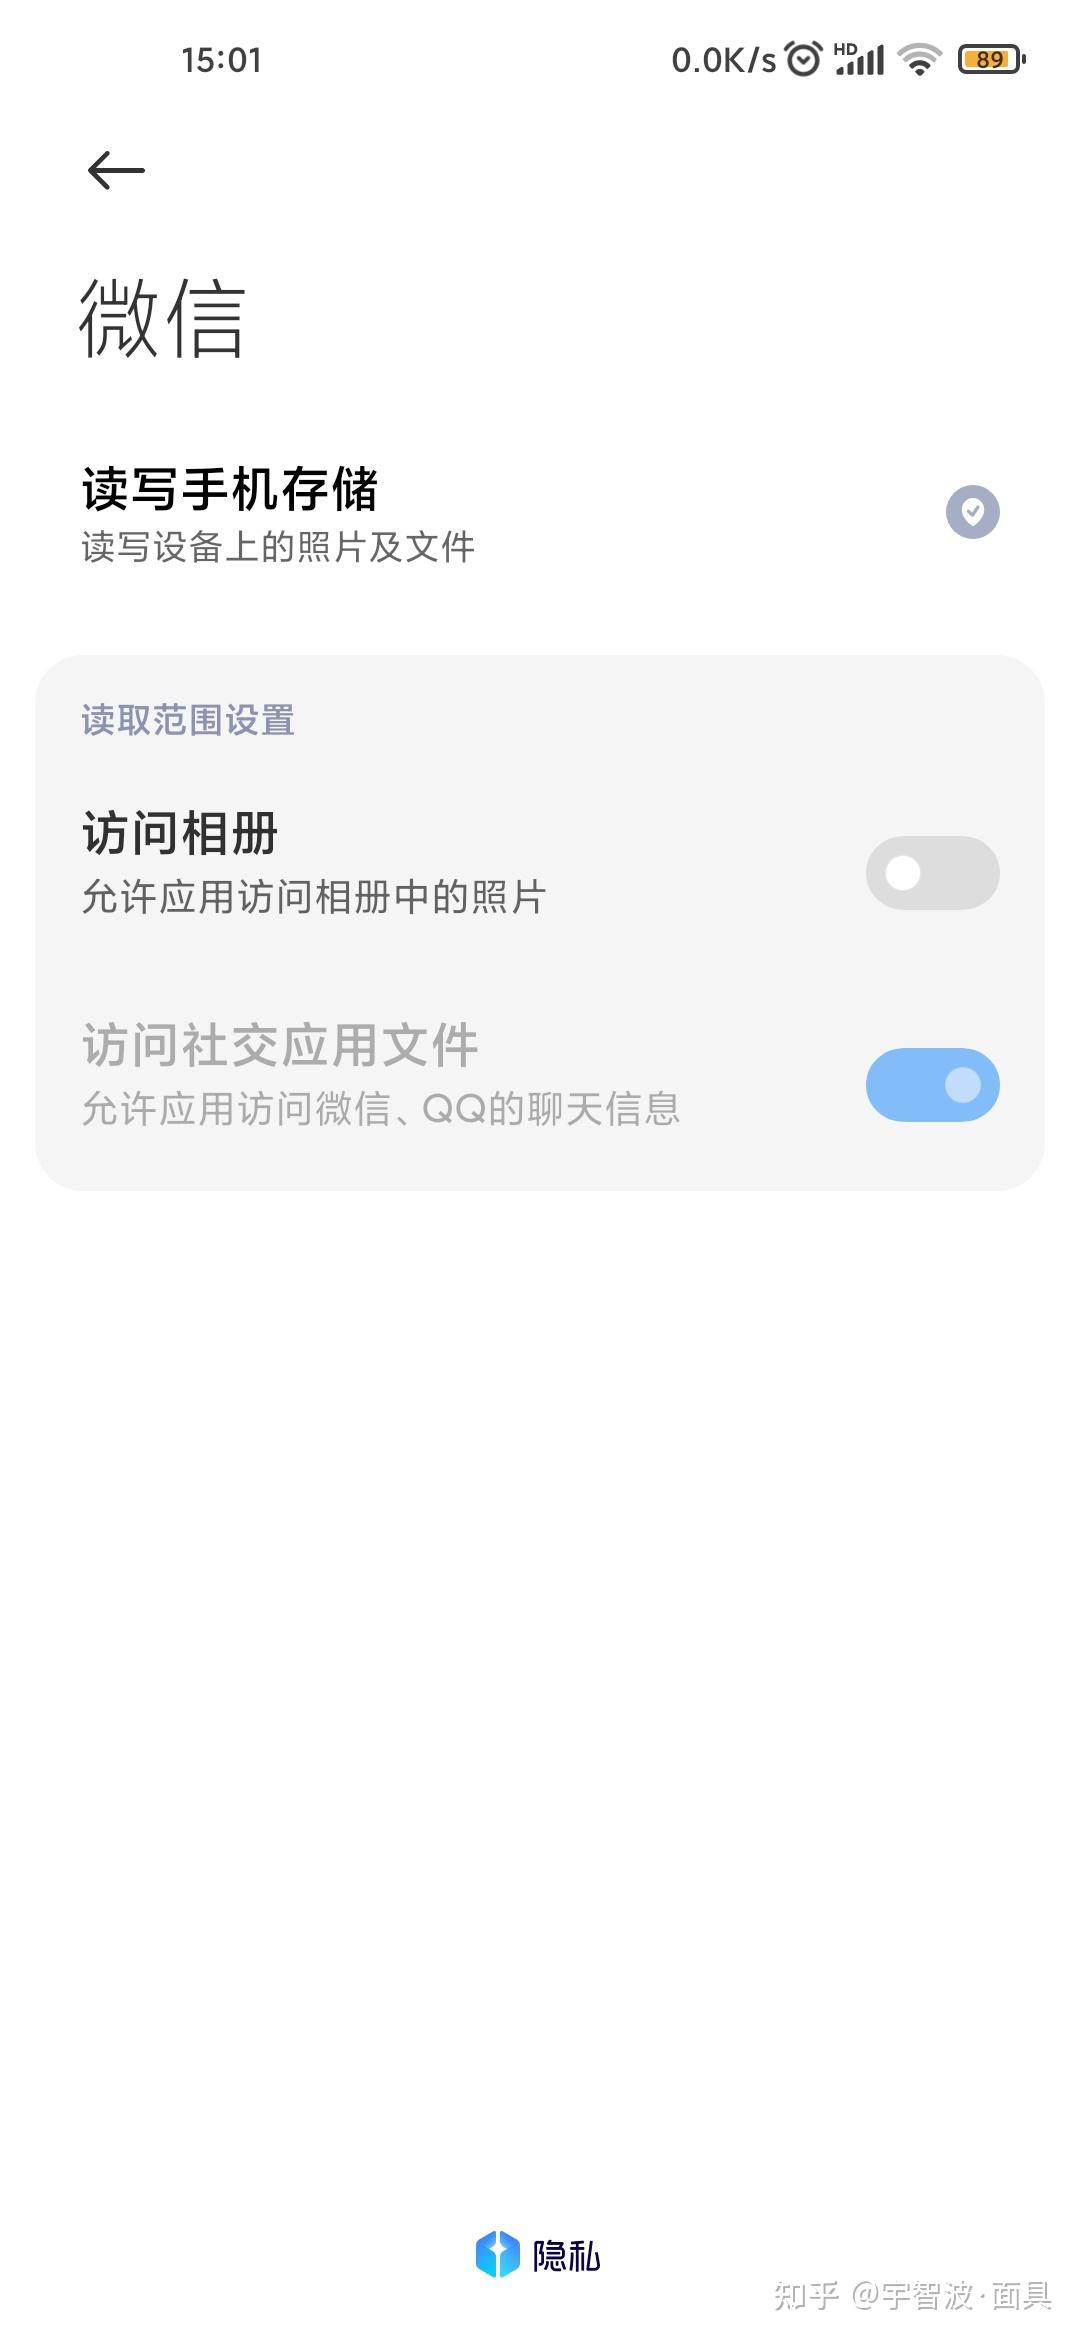 为什么苹果手机相册不显示的照片 在QQ上给他人发送照片的时候却显示 去相册找那张照片却看不到。好烦-ZOL问答